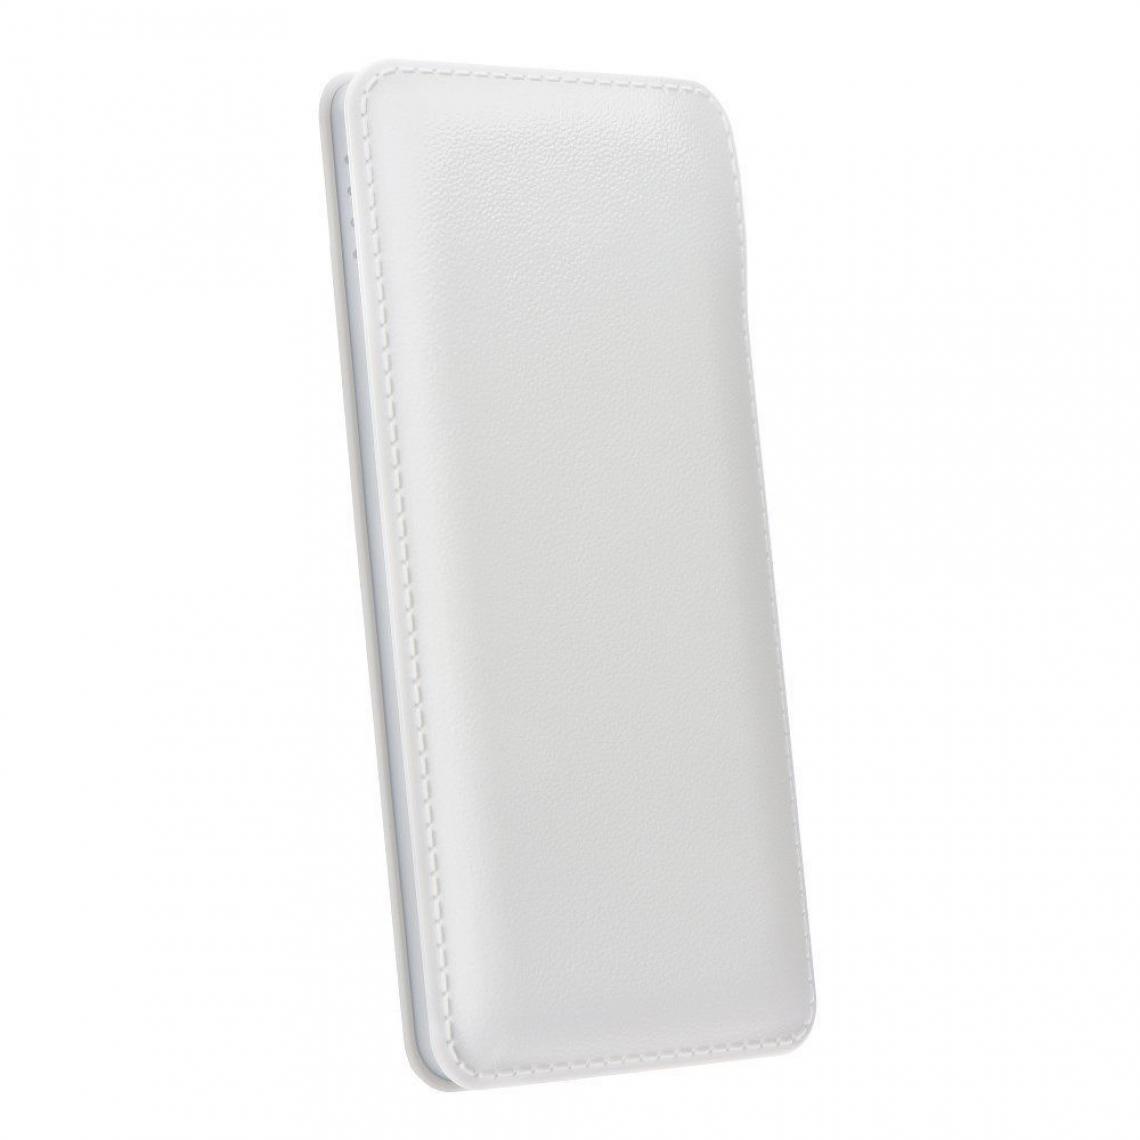 Ozzzo - Chargeur batterie externe 20000 mAh powerbank ozzzo blanc pour LG K8S - Autres accessoires smartphone